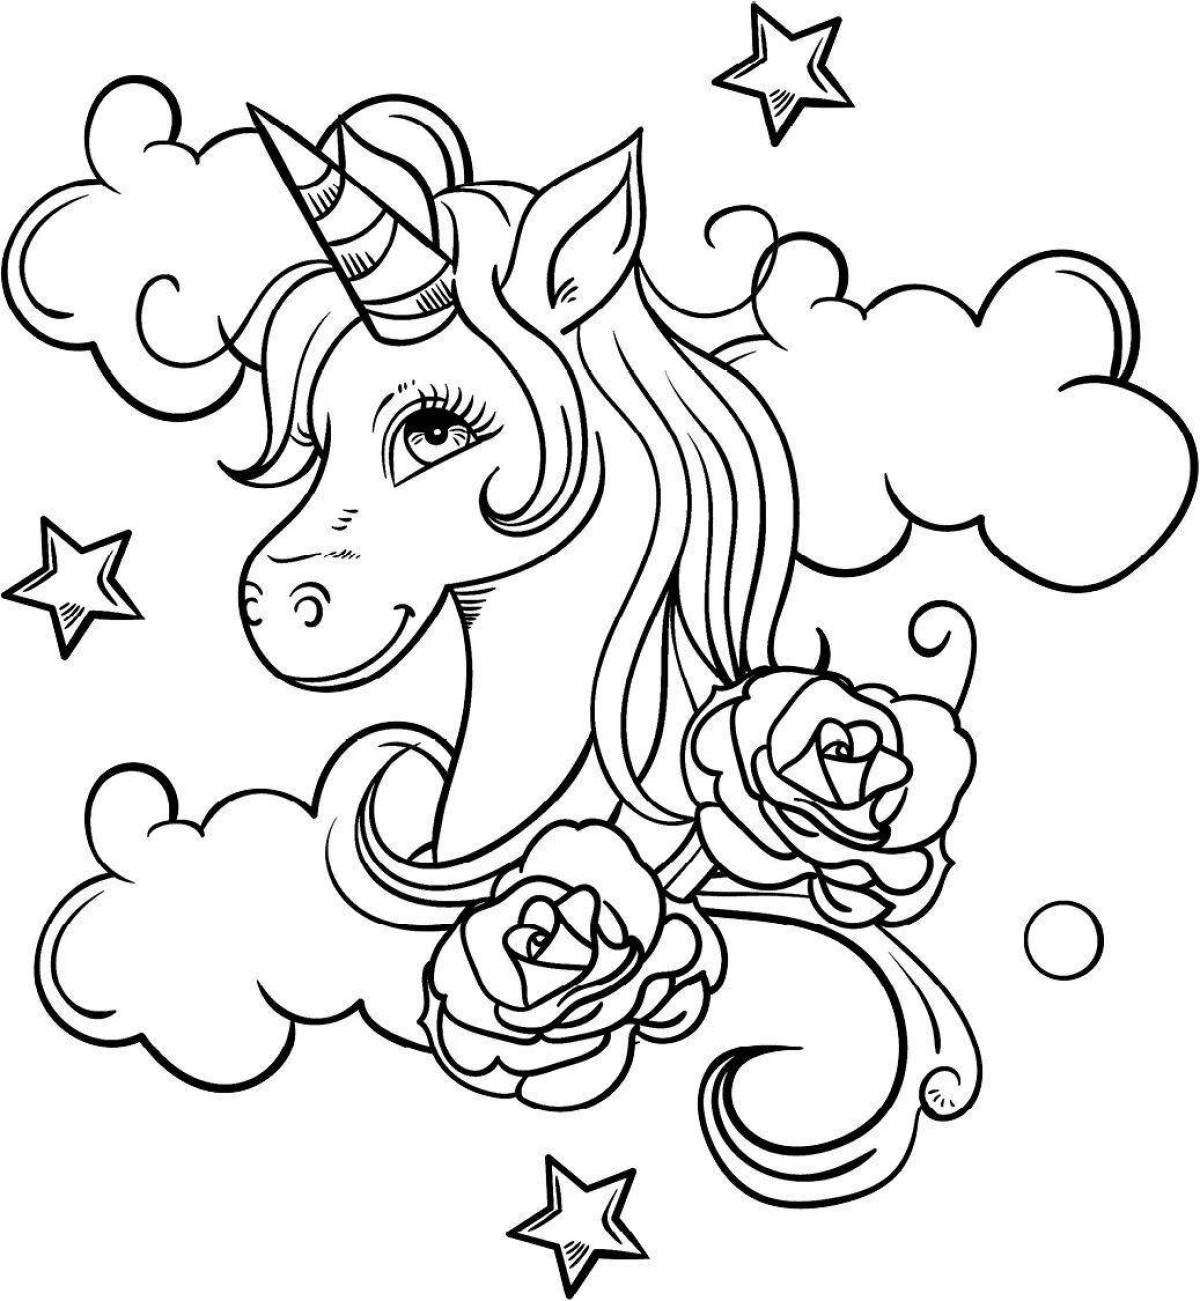 Coloring girl unicorn fun